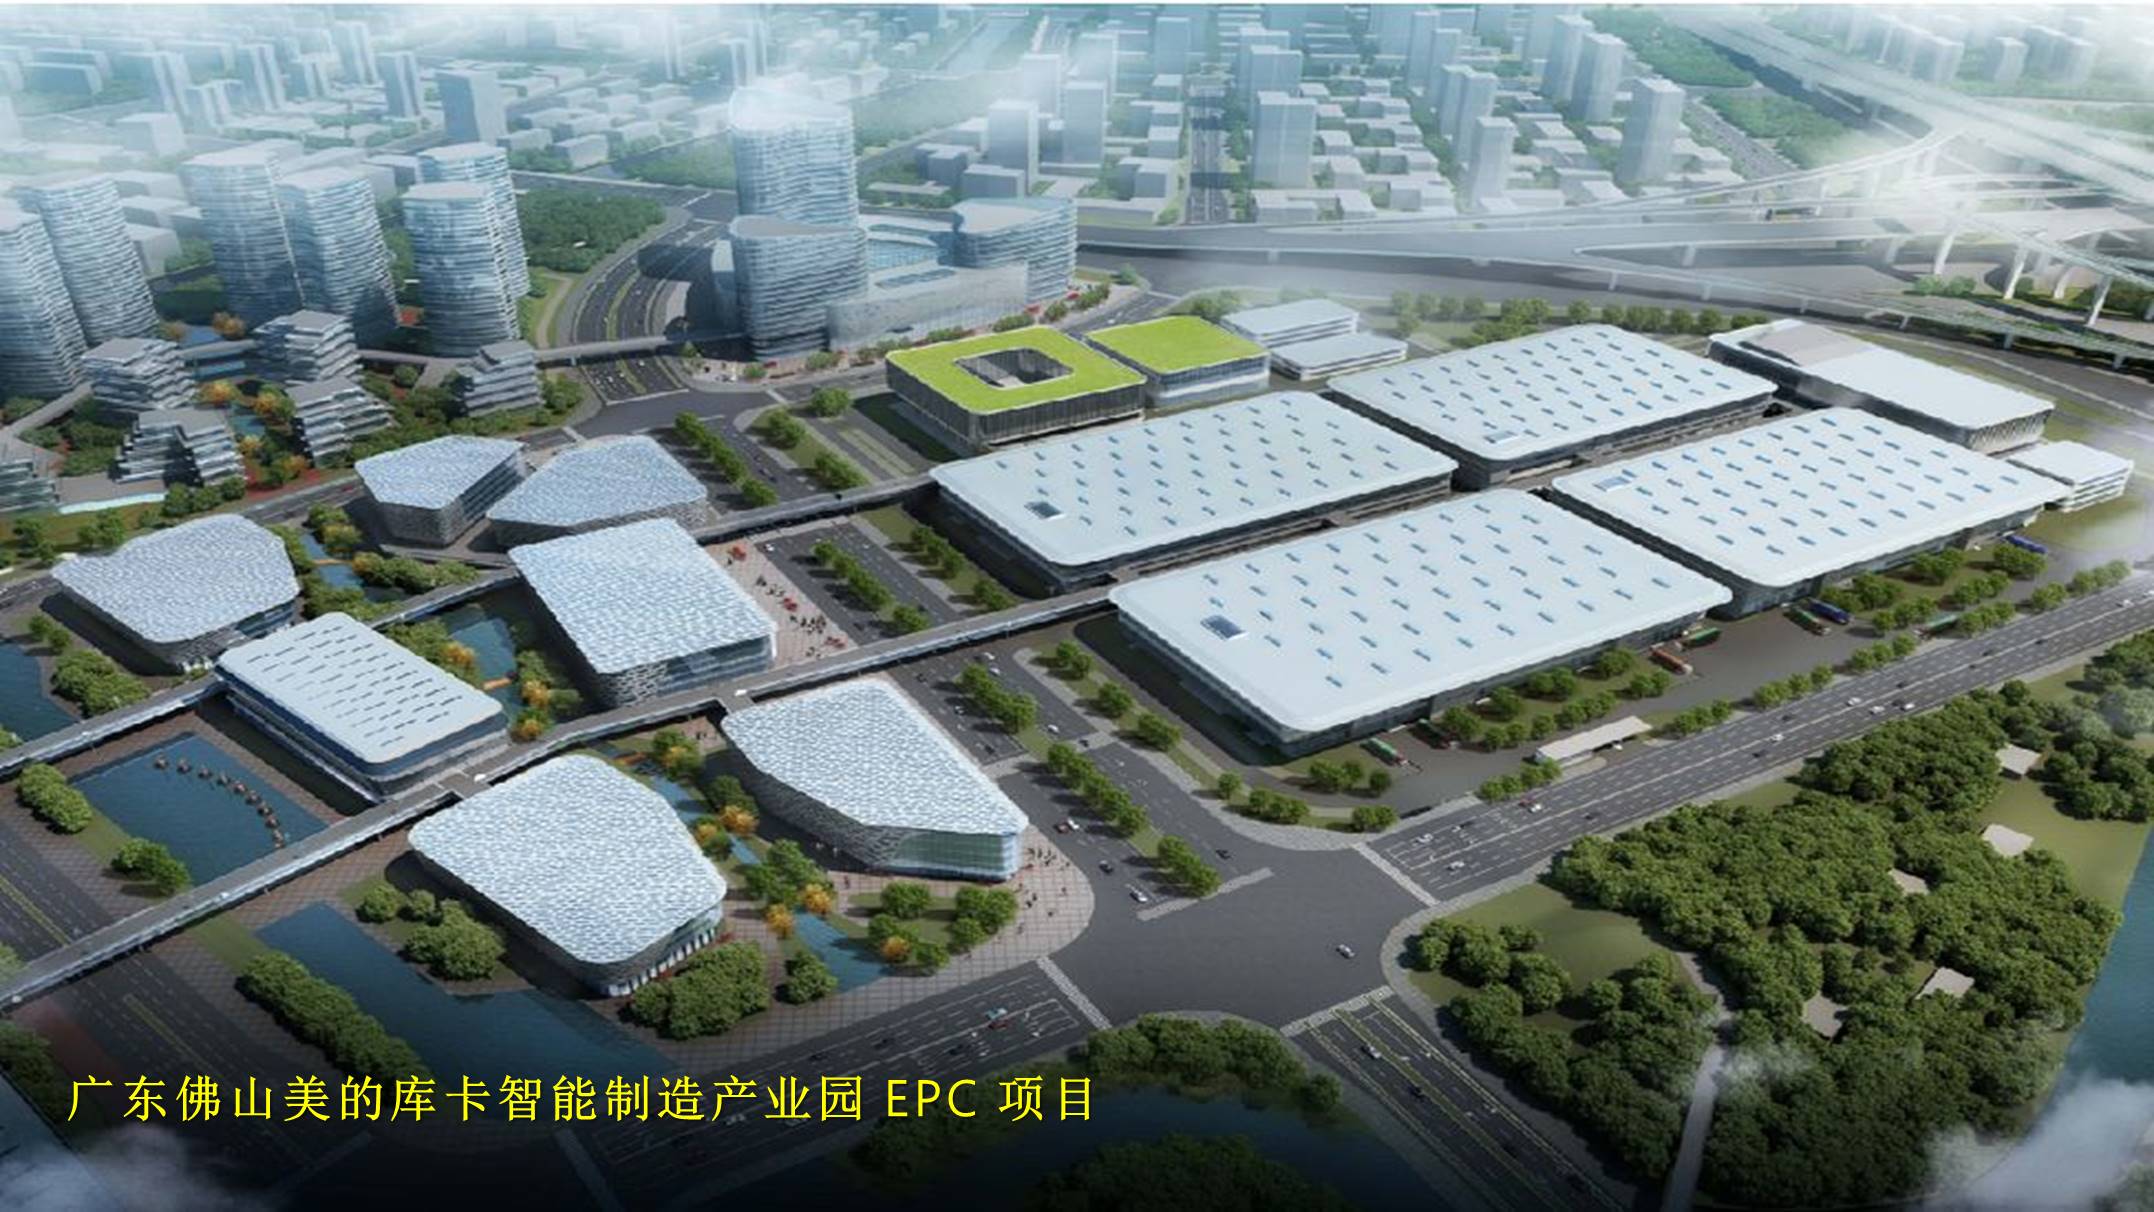 5、广东佛山美的库卡智能制造产业园 EPC项目.jpg